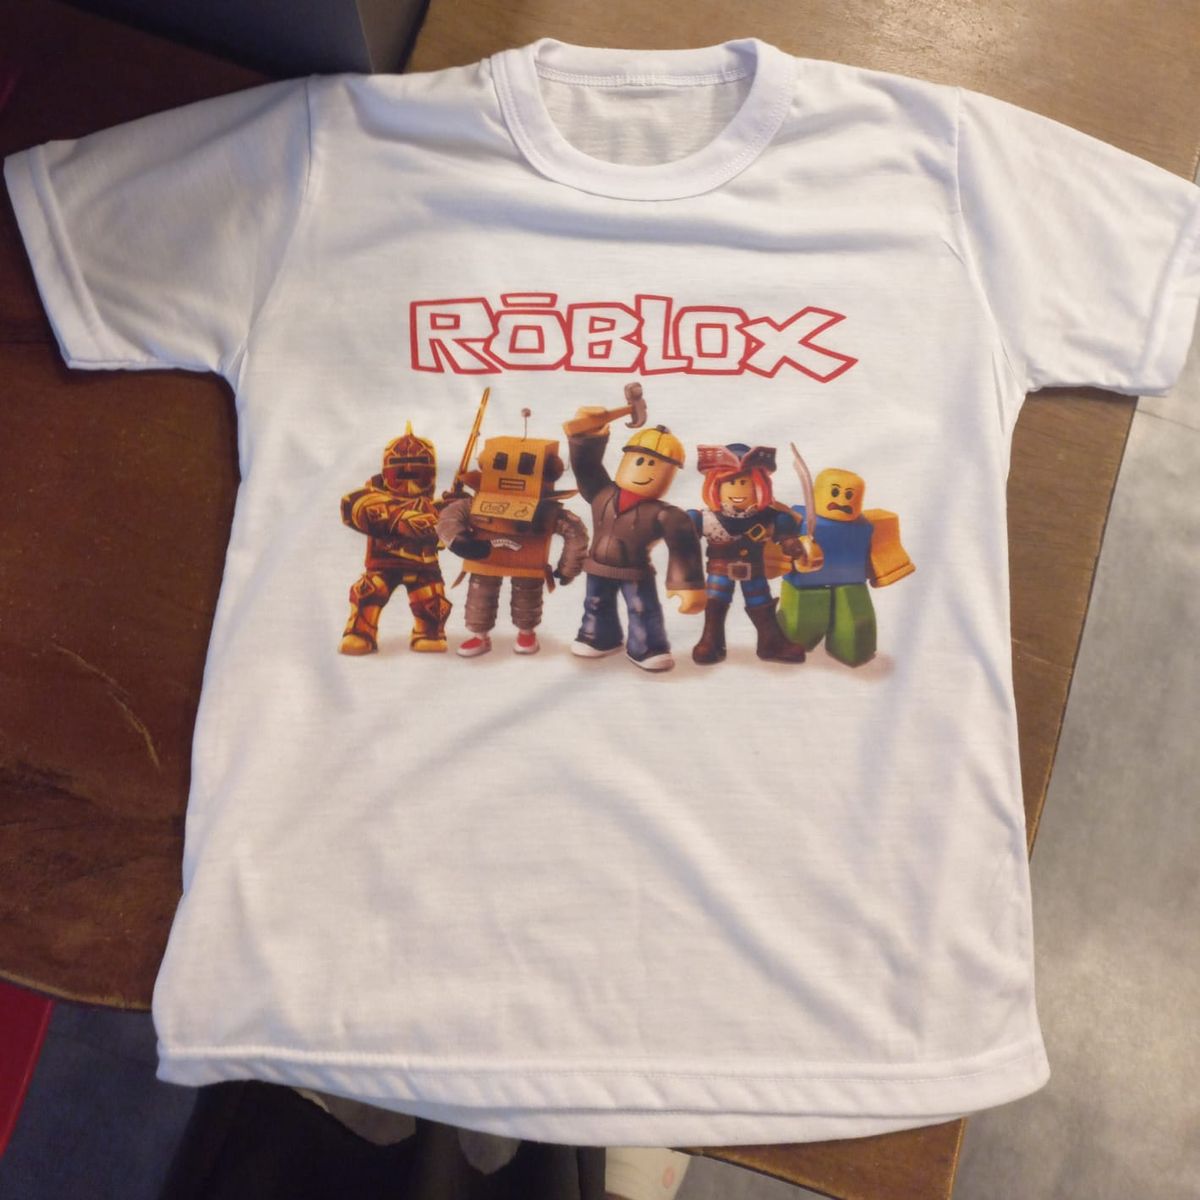 Camiseta Filho Roblox com Nome